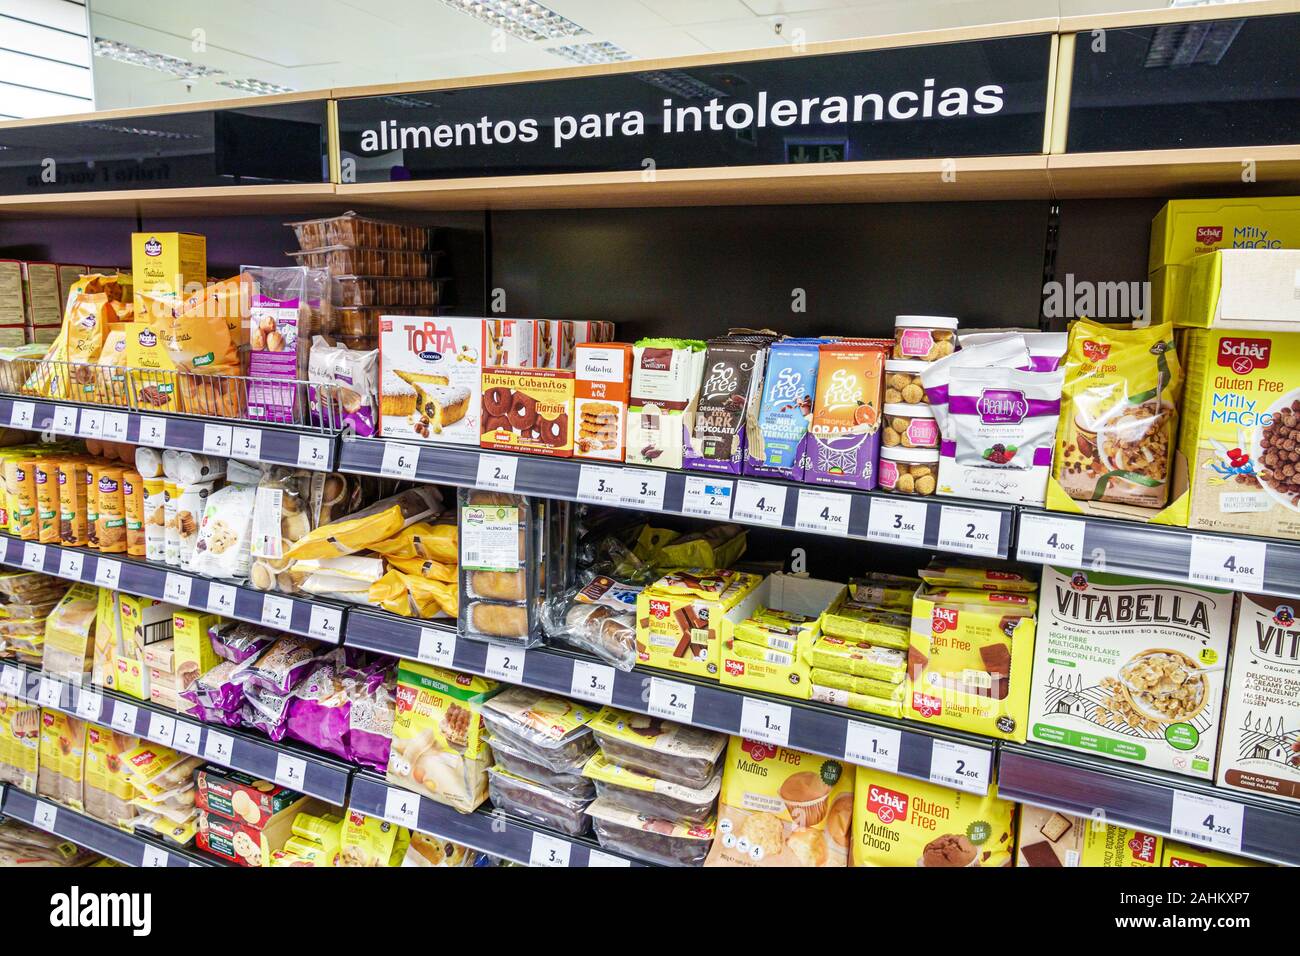 Tarragone Espagne hispanique Catalogne El Corte Inglés,grand magasin,intérieur,supermarché,épicerie,produits de spécialité intolérances alimentaires,disp Banque D'Images